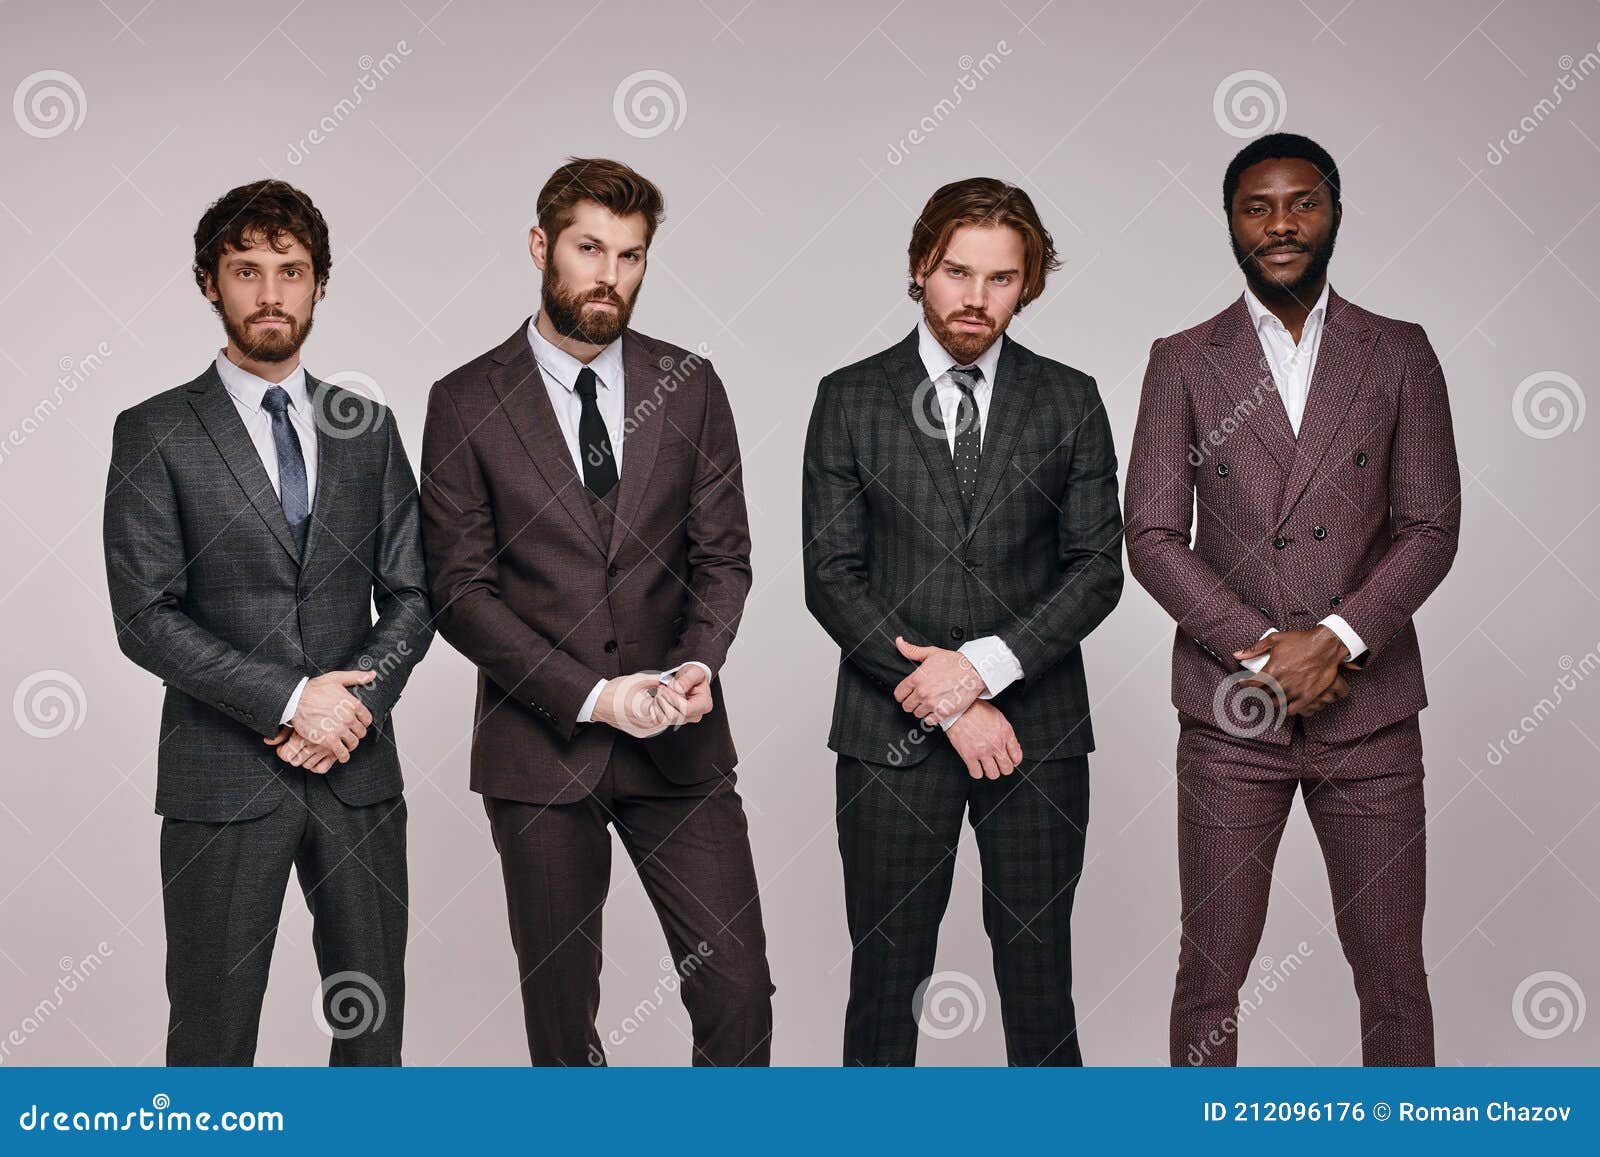 https://thumbs.dreamstime.com/z/profissionais-executivos-confiantes-em-vestimenta-formal-posando-%C3%A0-c%C3%A2mera-parado-na-fileira-de-homens-africanos-e-europeus-212096176.jpg